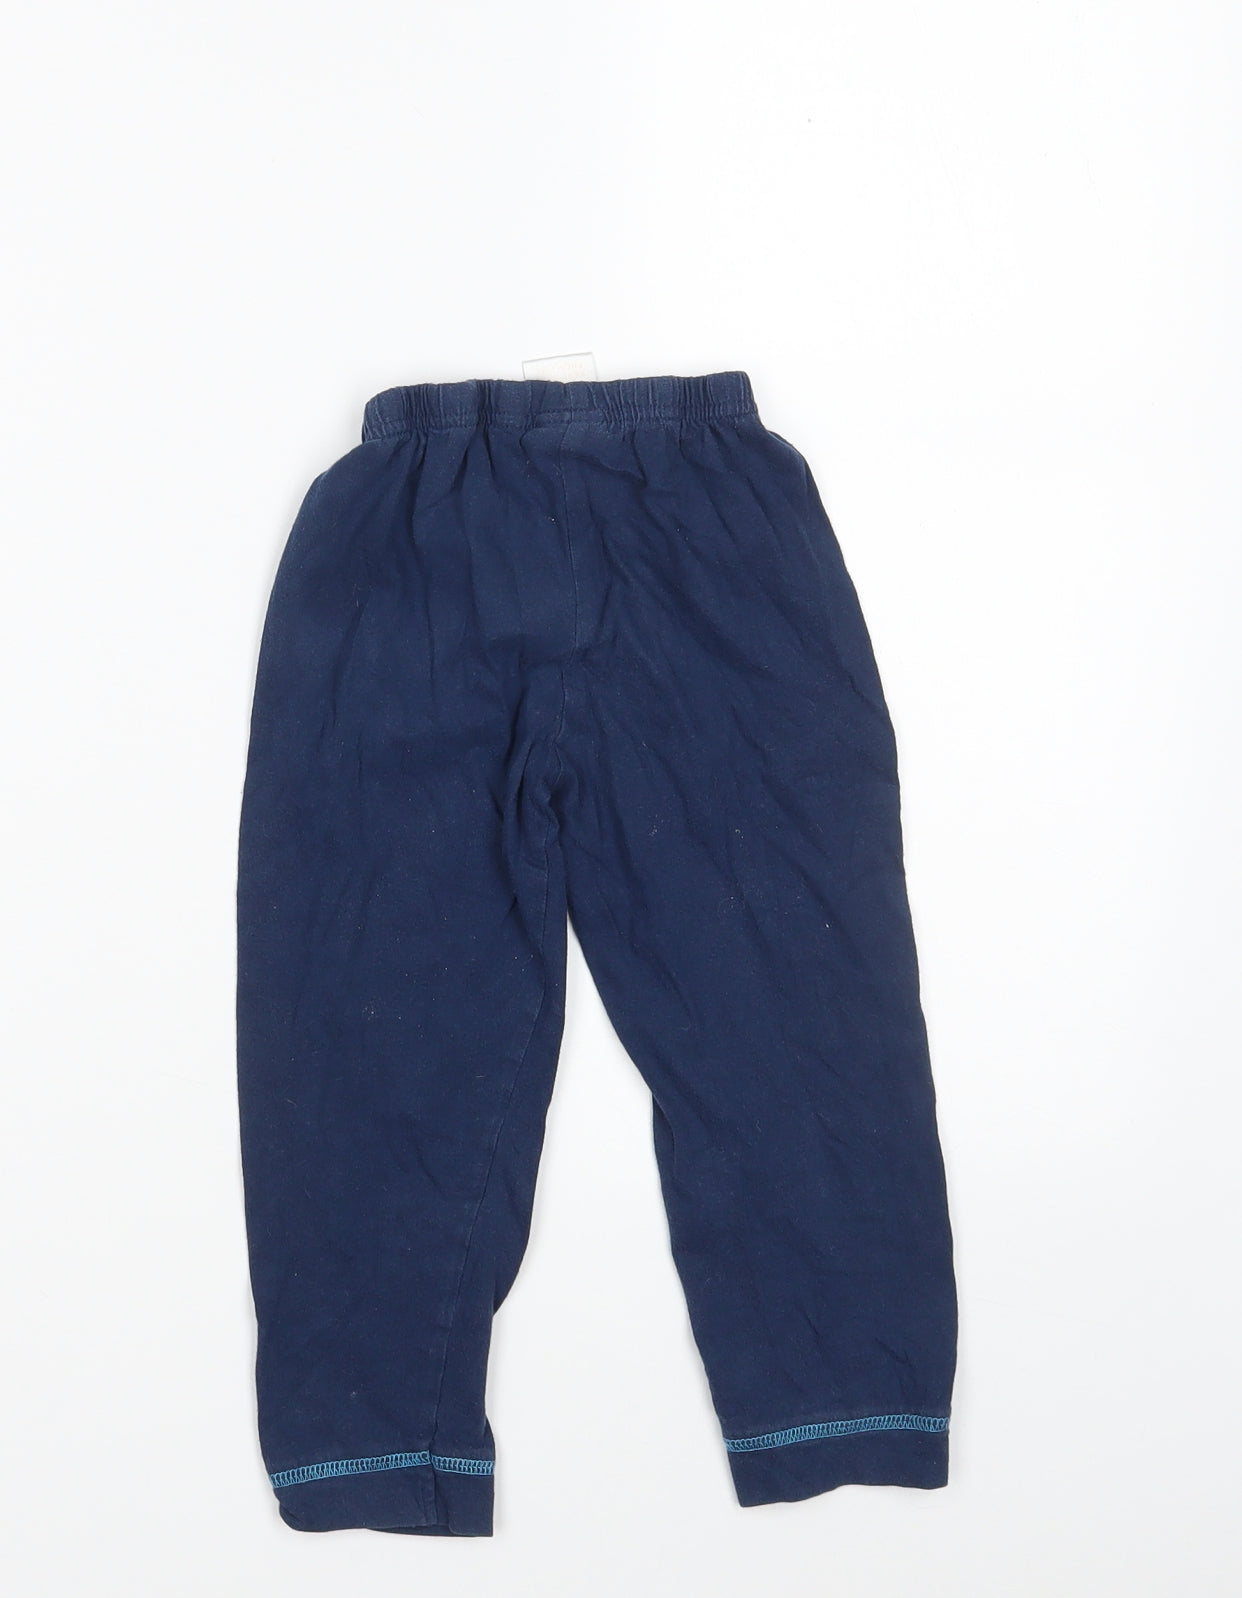 Paw Petrol Boys Blue  100% Cotton Sweatpants Trousers Size 2-3 Years  Slim  - Waist 16in; Inside  leg 14in